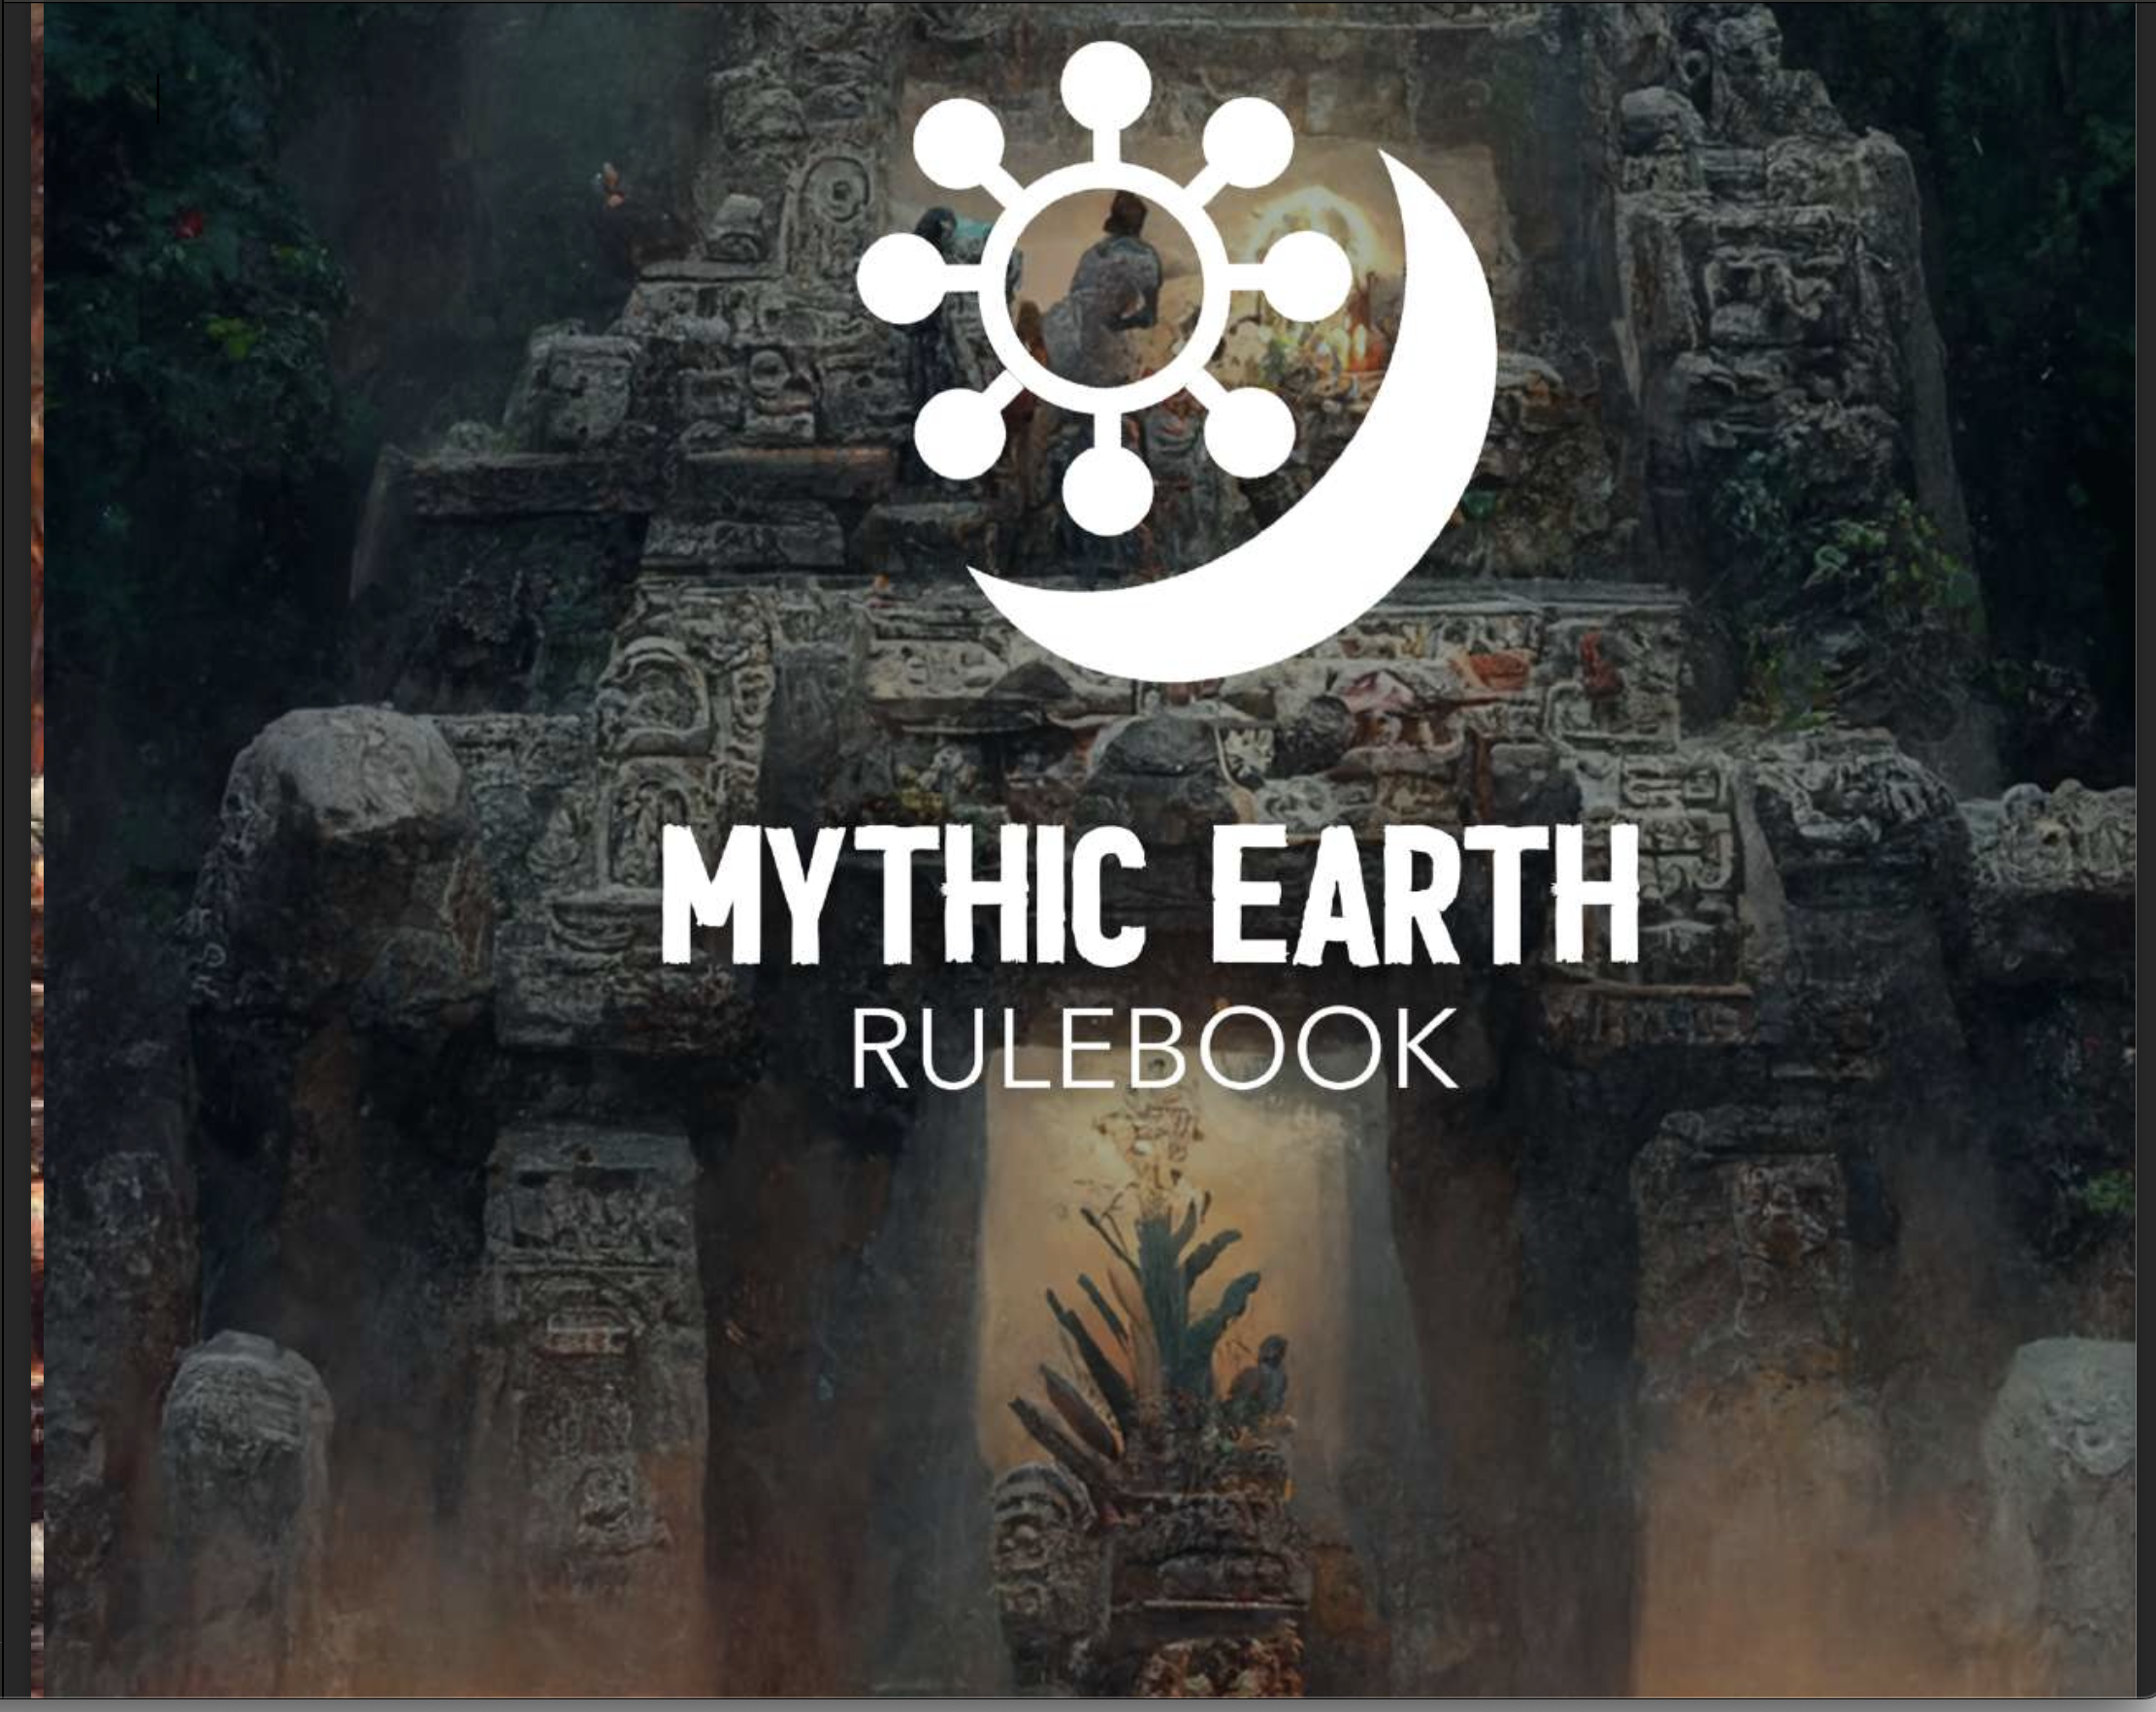 Mythic Earth (formerly Mythic Americas)